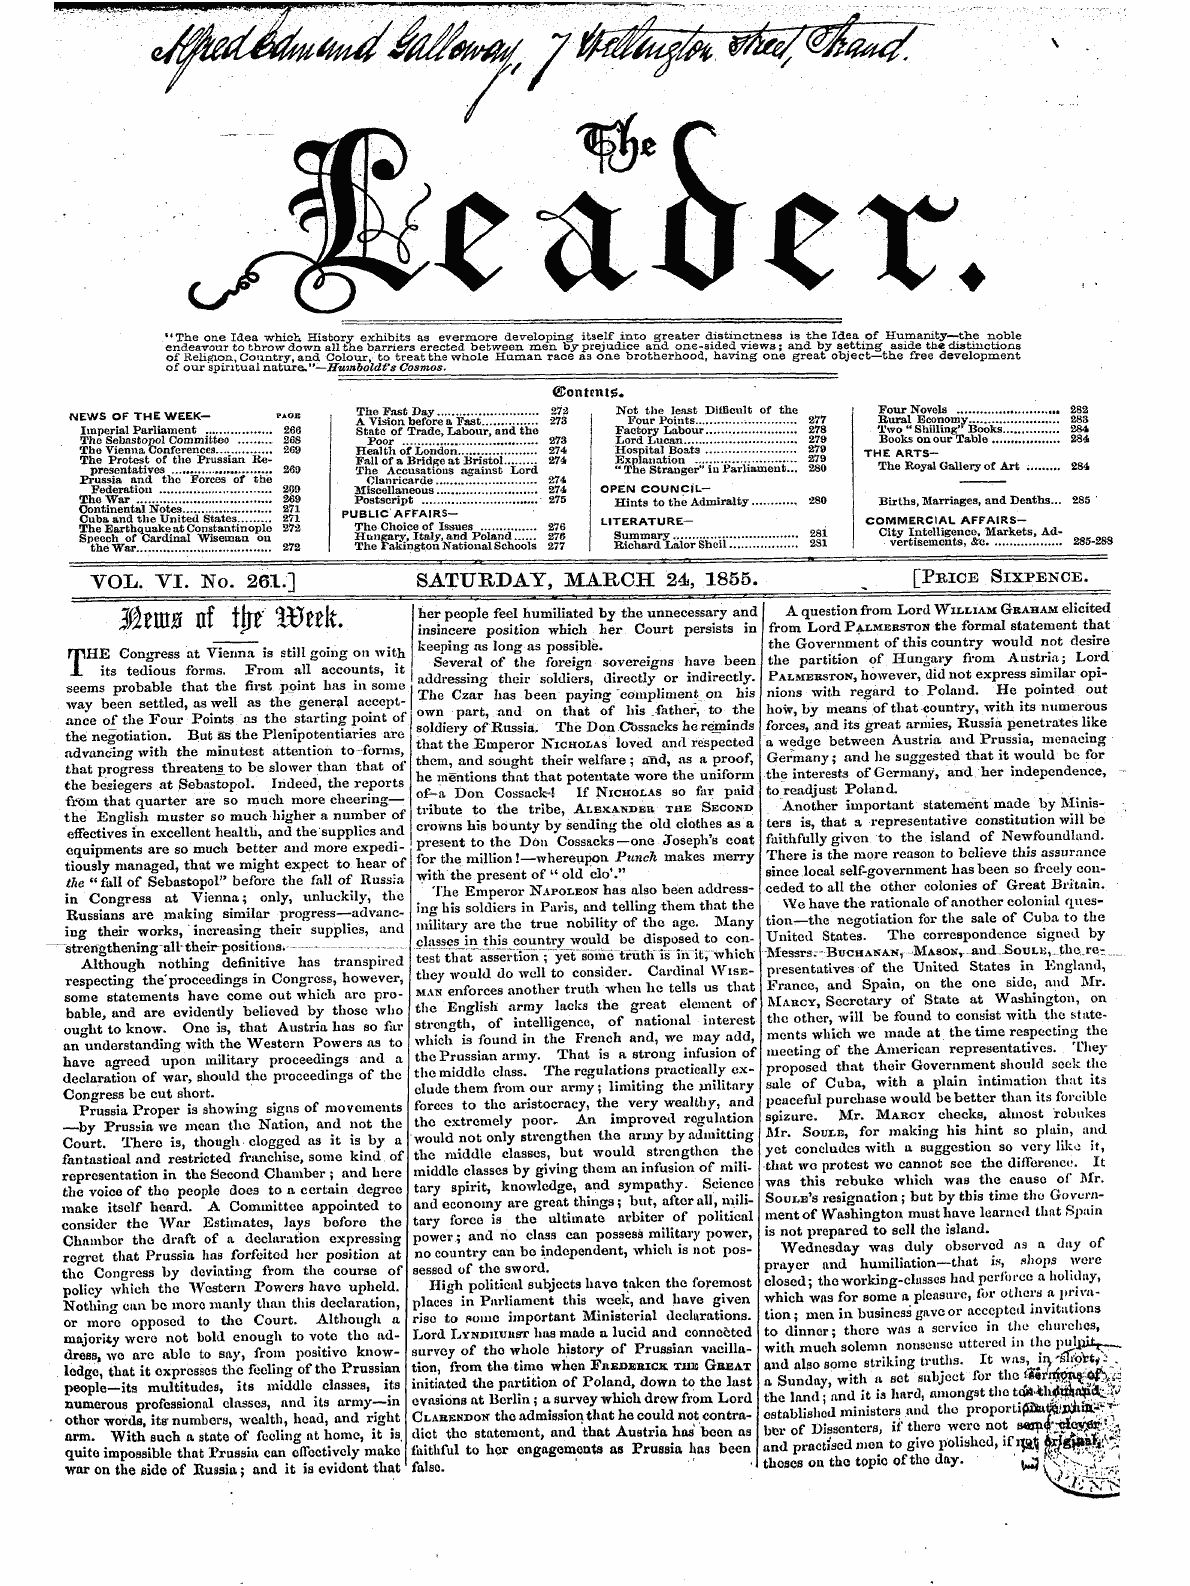 Leader (1850-1860): jS F Y, 2nd edition - Vol. Vi. No. 261] Saturday, March 24, 18...